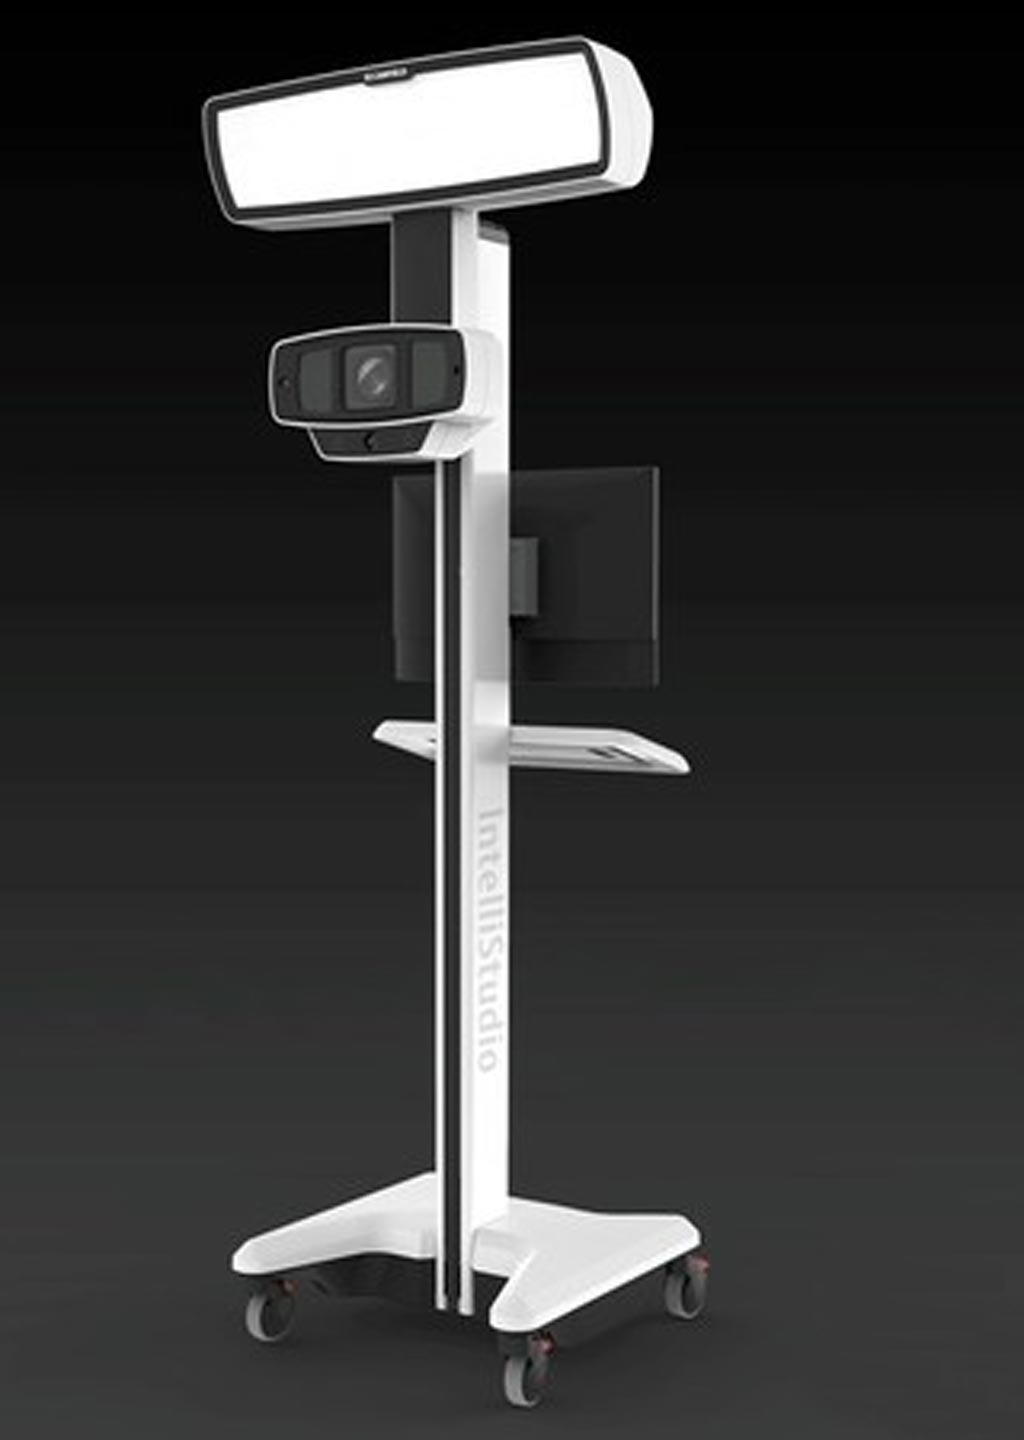 Imagen: El sistema de fotografía avanzada, IntelliStudio II, proporciona resultados consistentes para las aplicaciones de dermatología (Fotografía cortesía de Canfield Scientific).